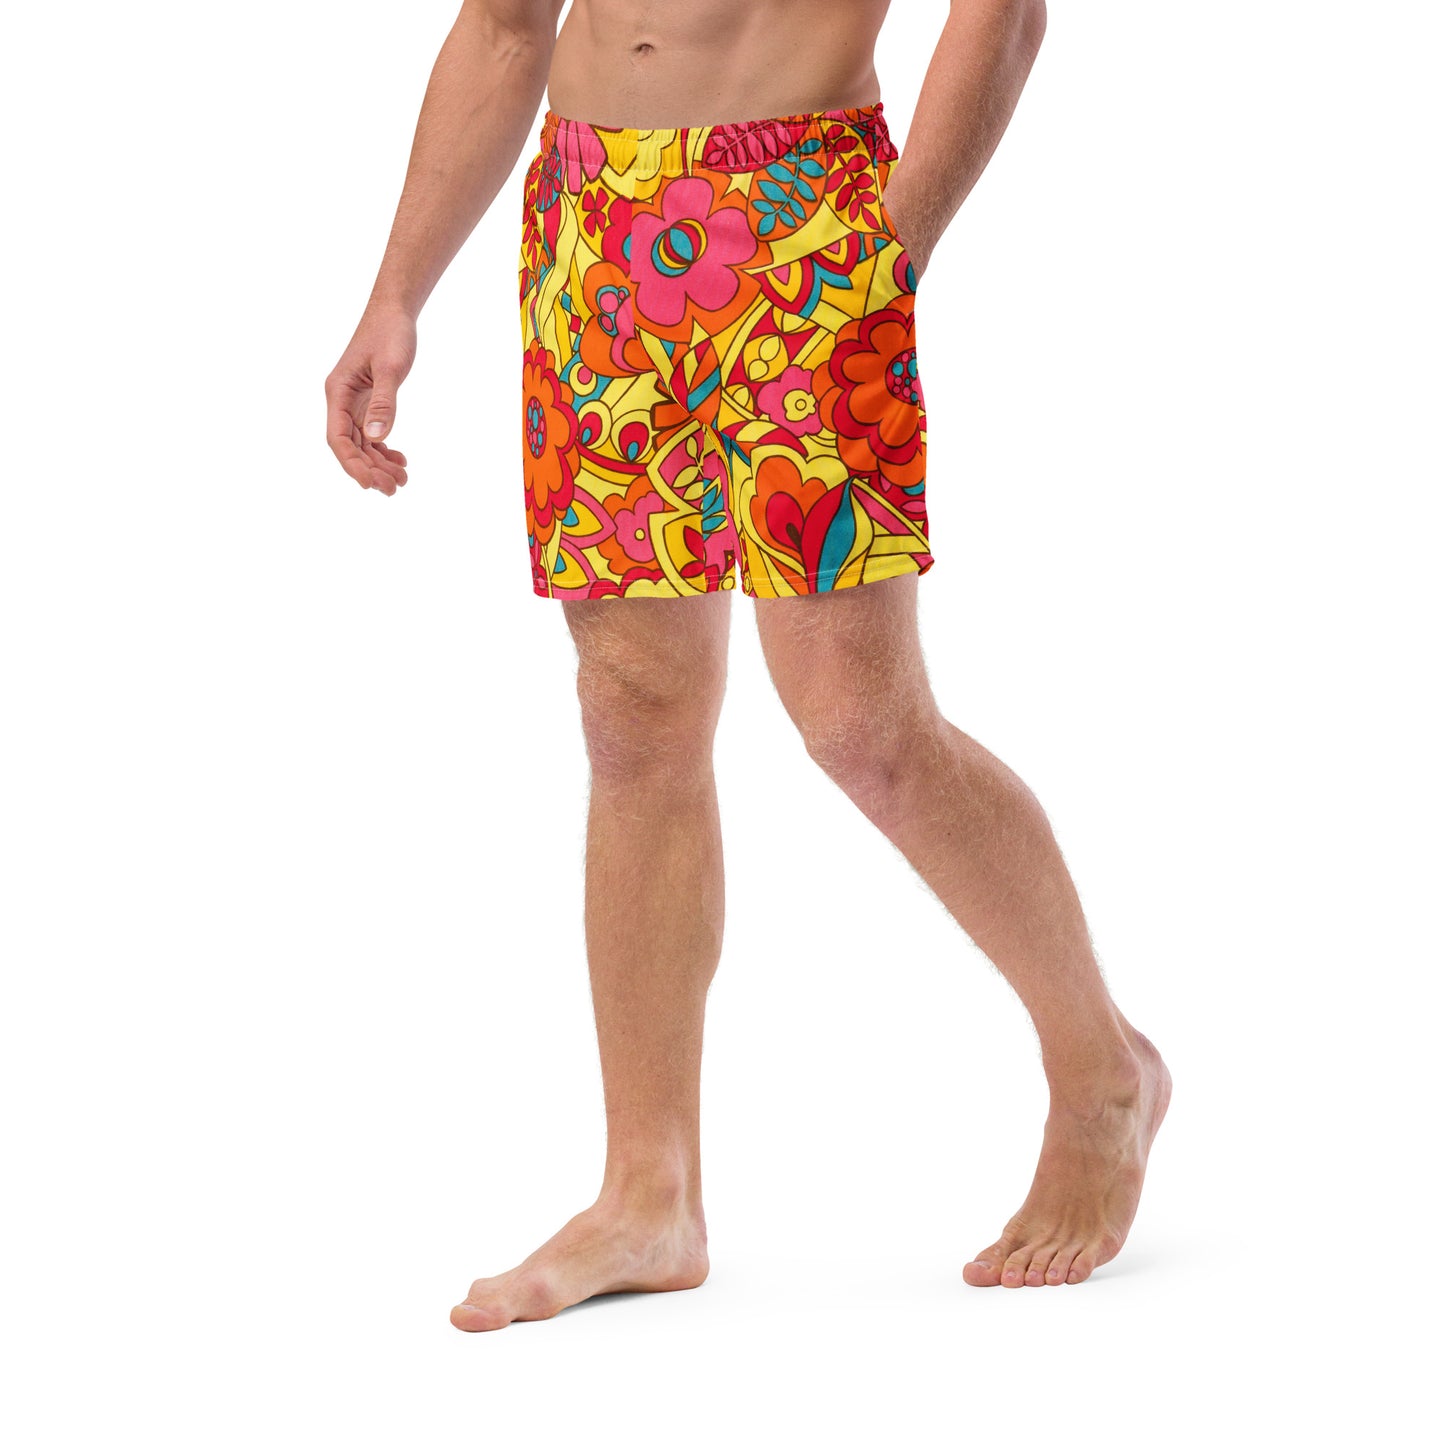 GROOVY - Men's swim trunks